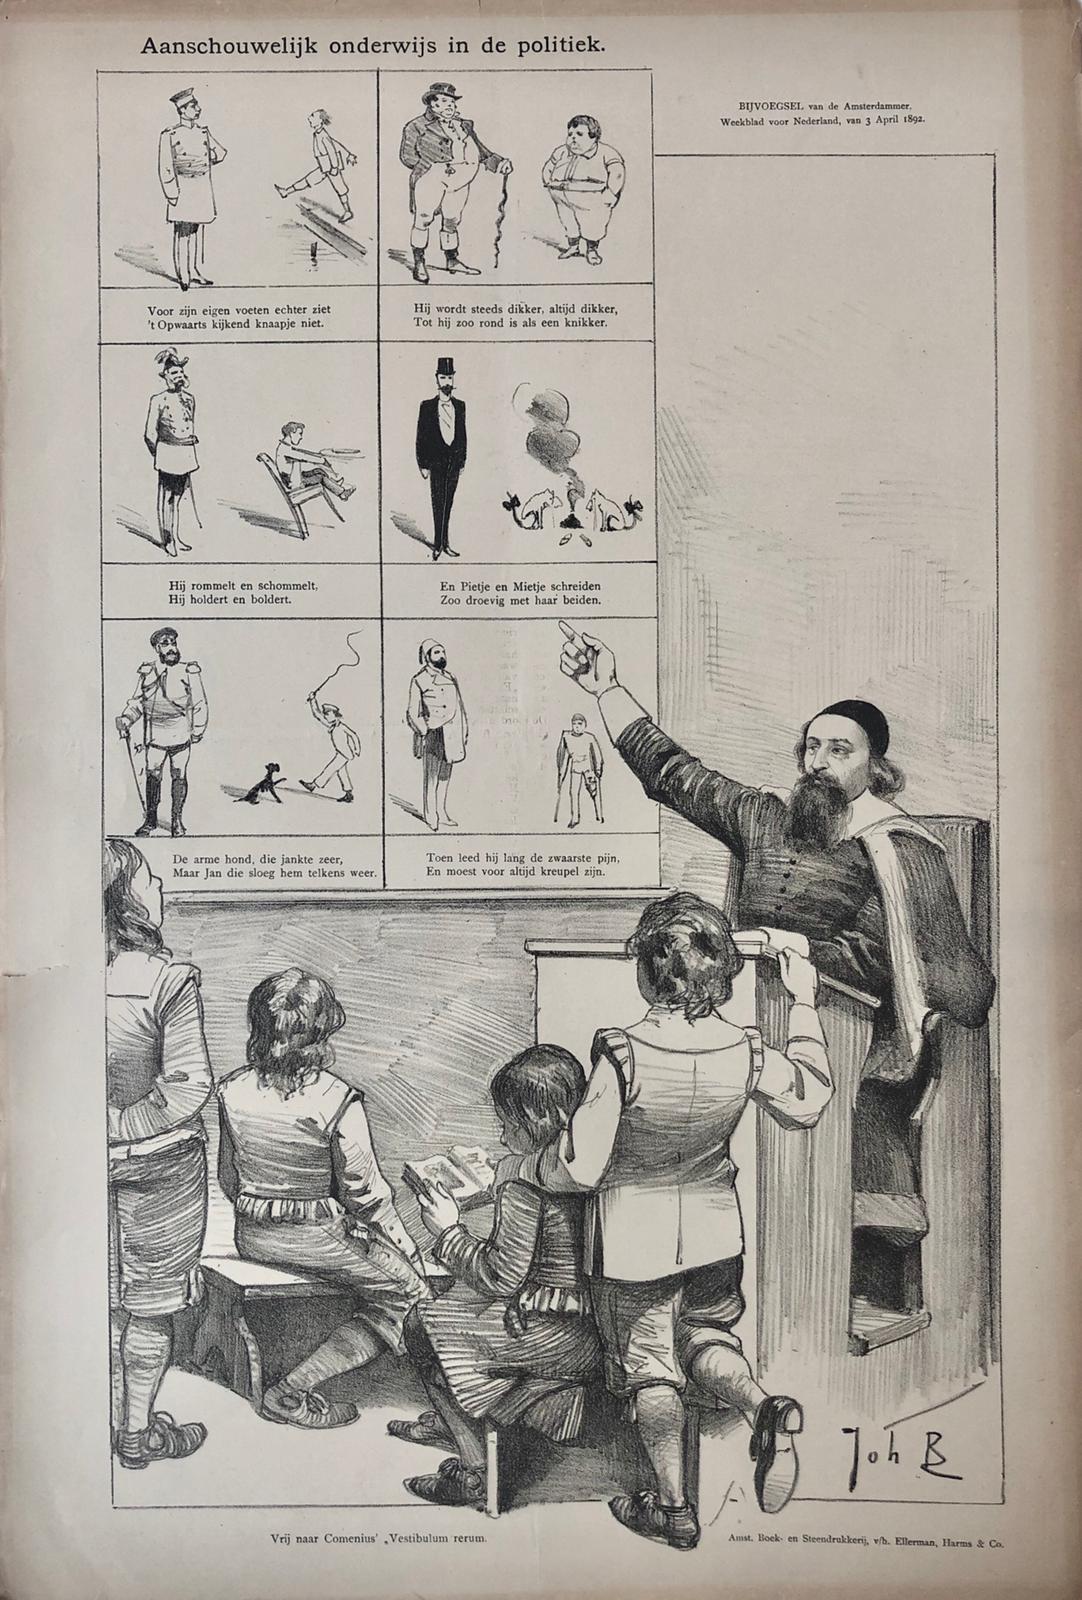 [Original lithograph/lithografie by Johan Braakensiek] Aanschouwelijk onderwijs in de politiek, 3 April 1892, 1 pp.